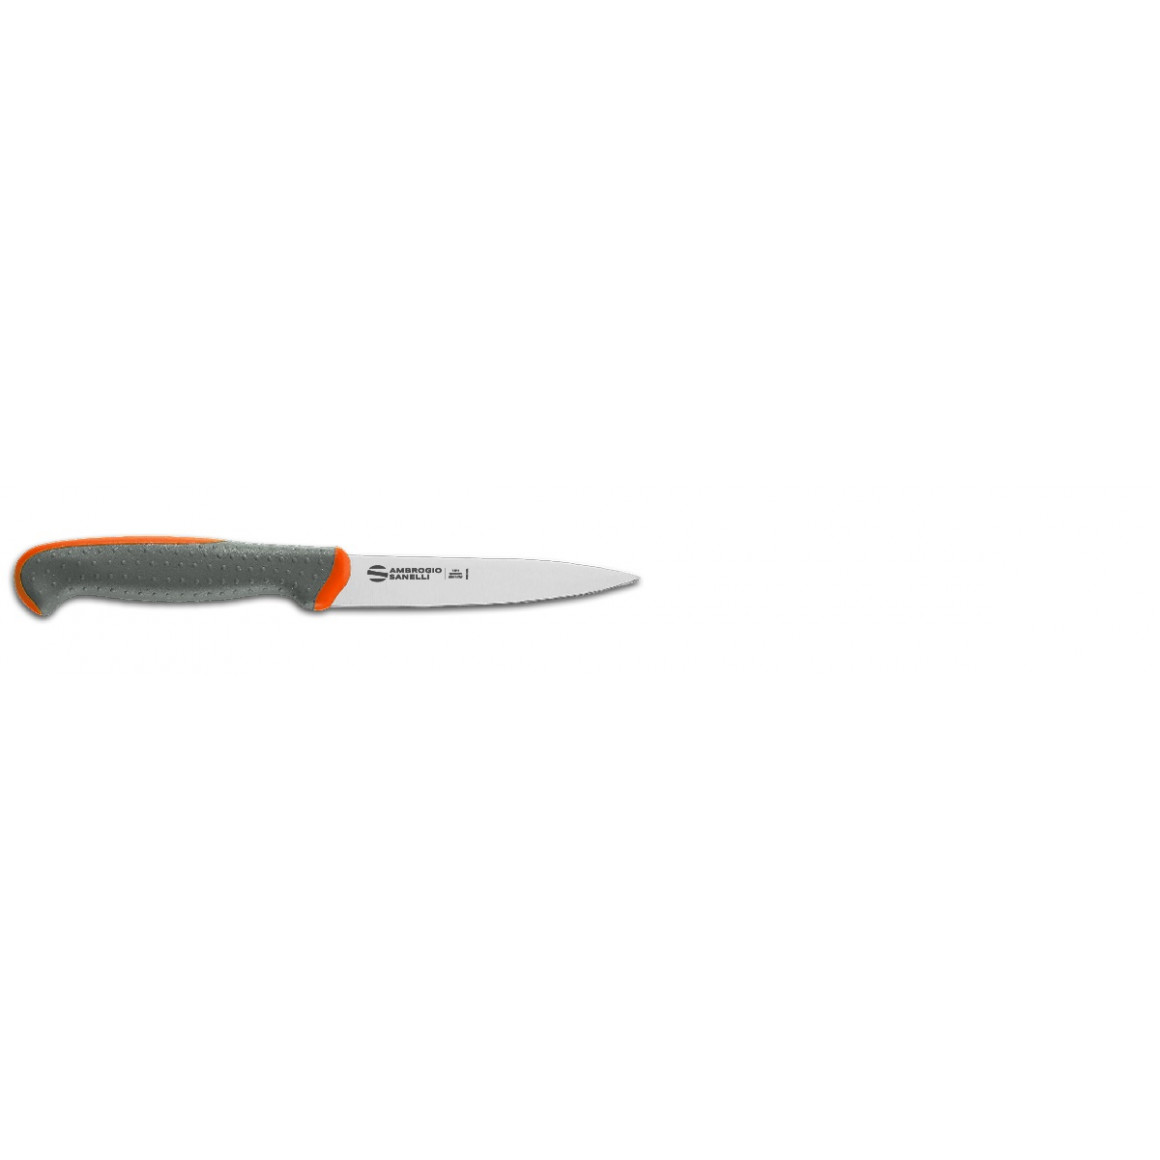 Tecna - Paring knife/L11